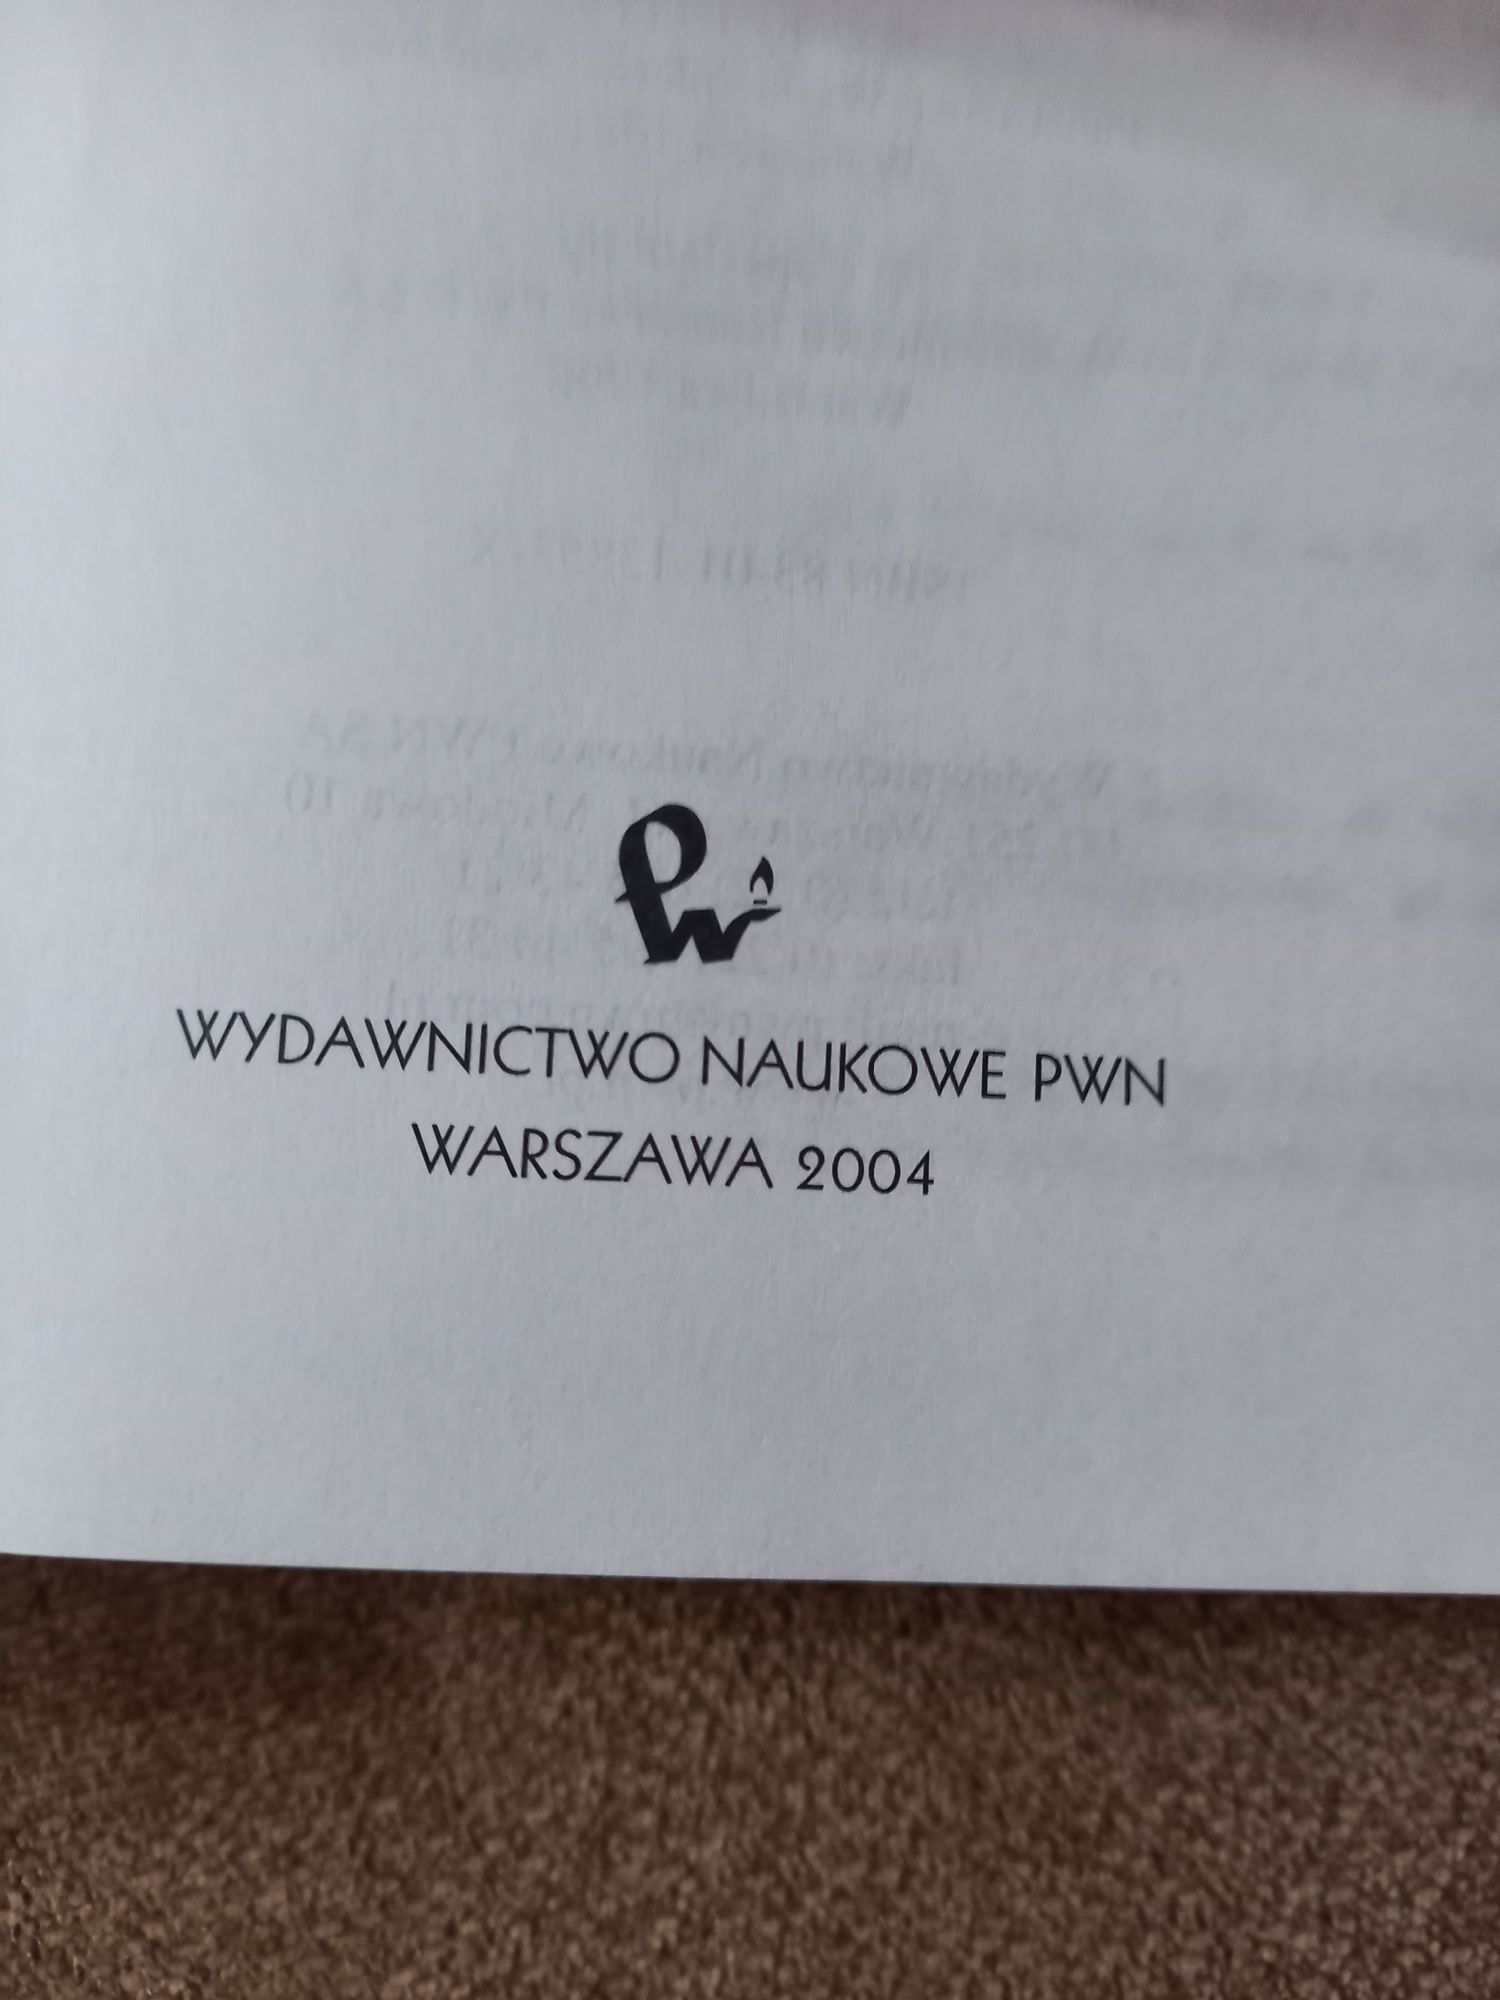 Historia filozofii 3 tomy Władysław Tatarkiewicz